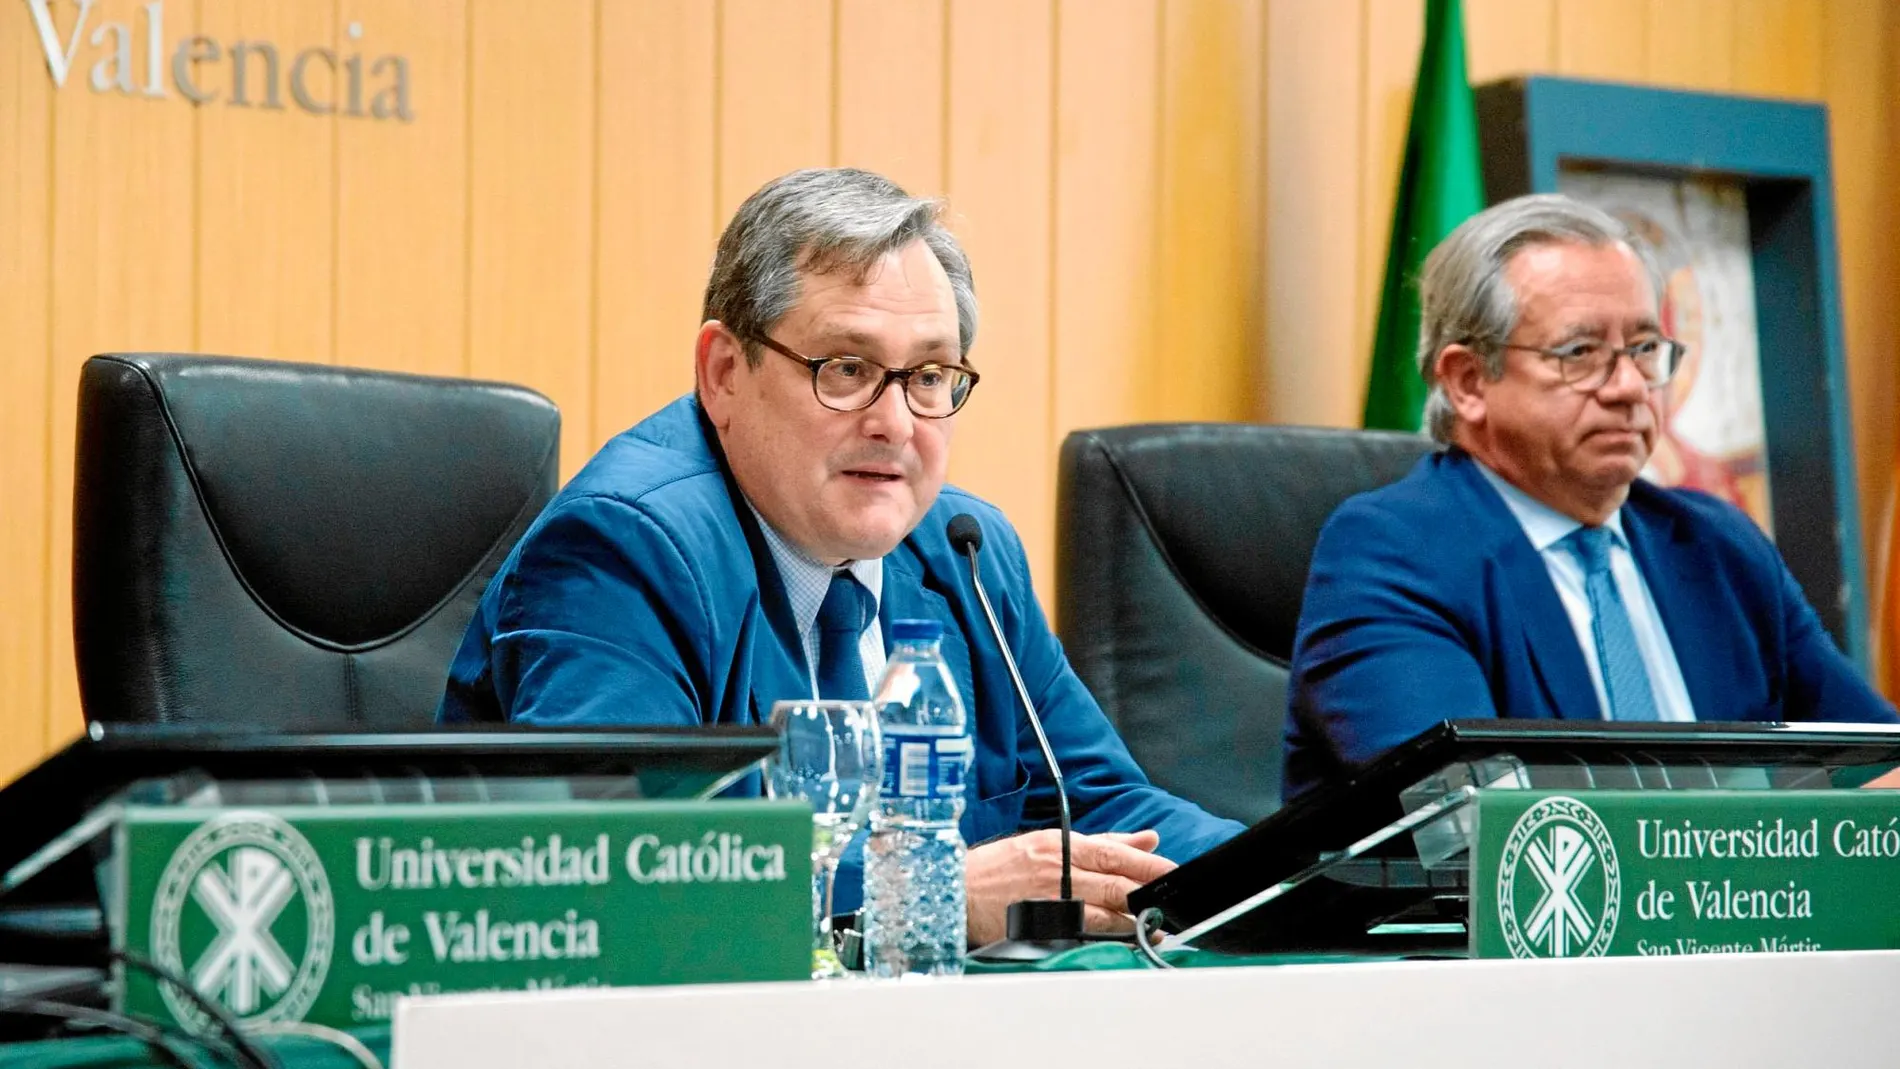 El director de LA RAZÓN junto a Vicente Garrido, catedrático de Derecho Constitucional. Foto: Kike Taberner